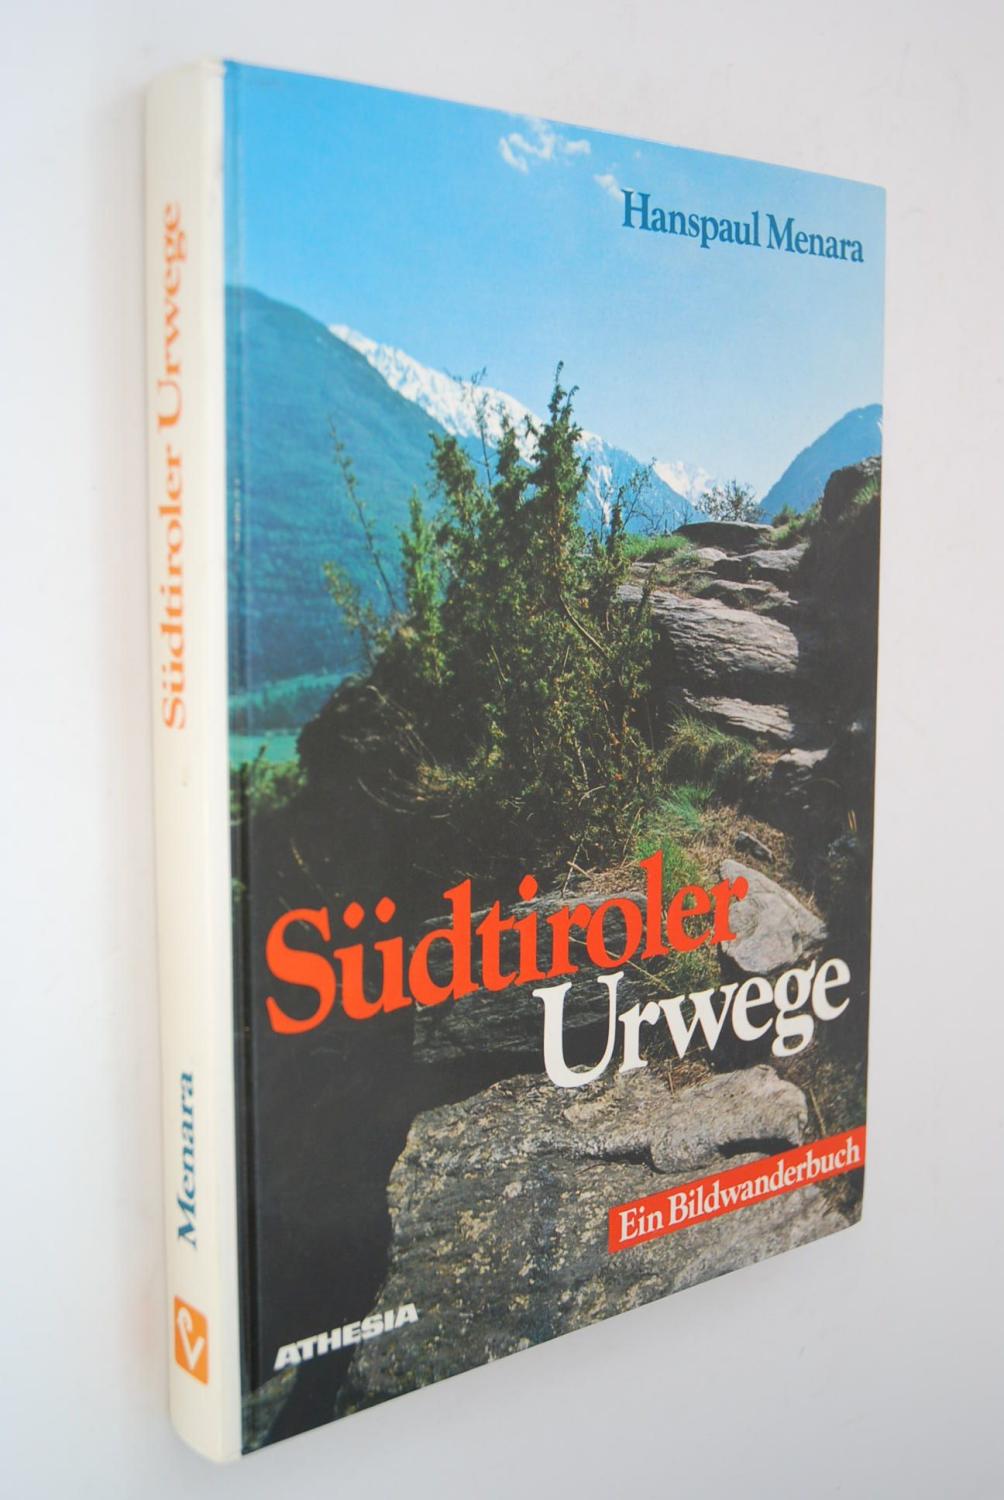 Südtiroler Urwege: Ein Bildwanderbuch